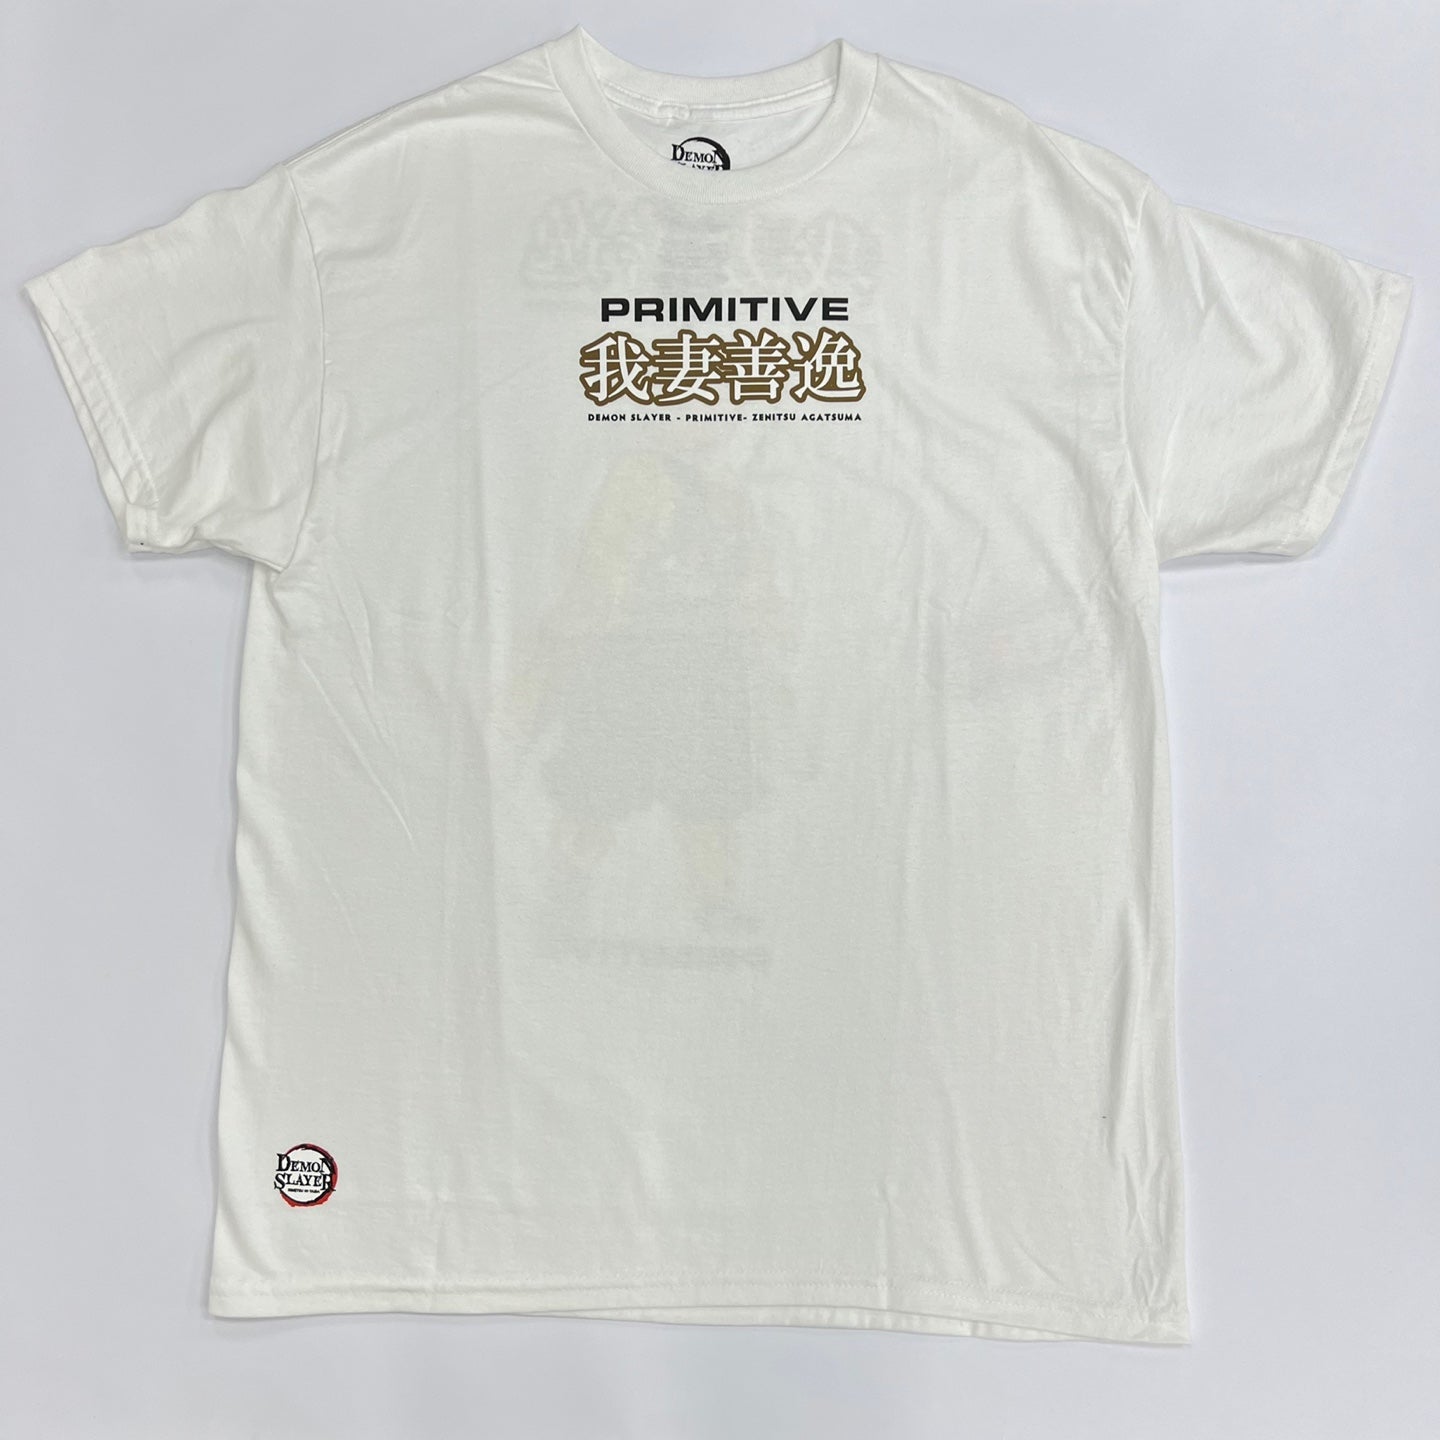 Primitive X Zenitsu Agatsuma Graphic T-Shirt - White